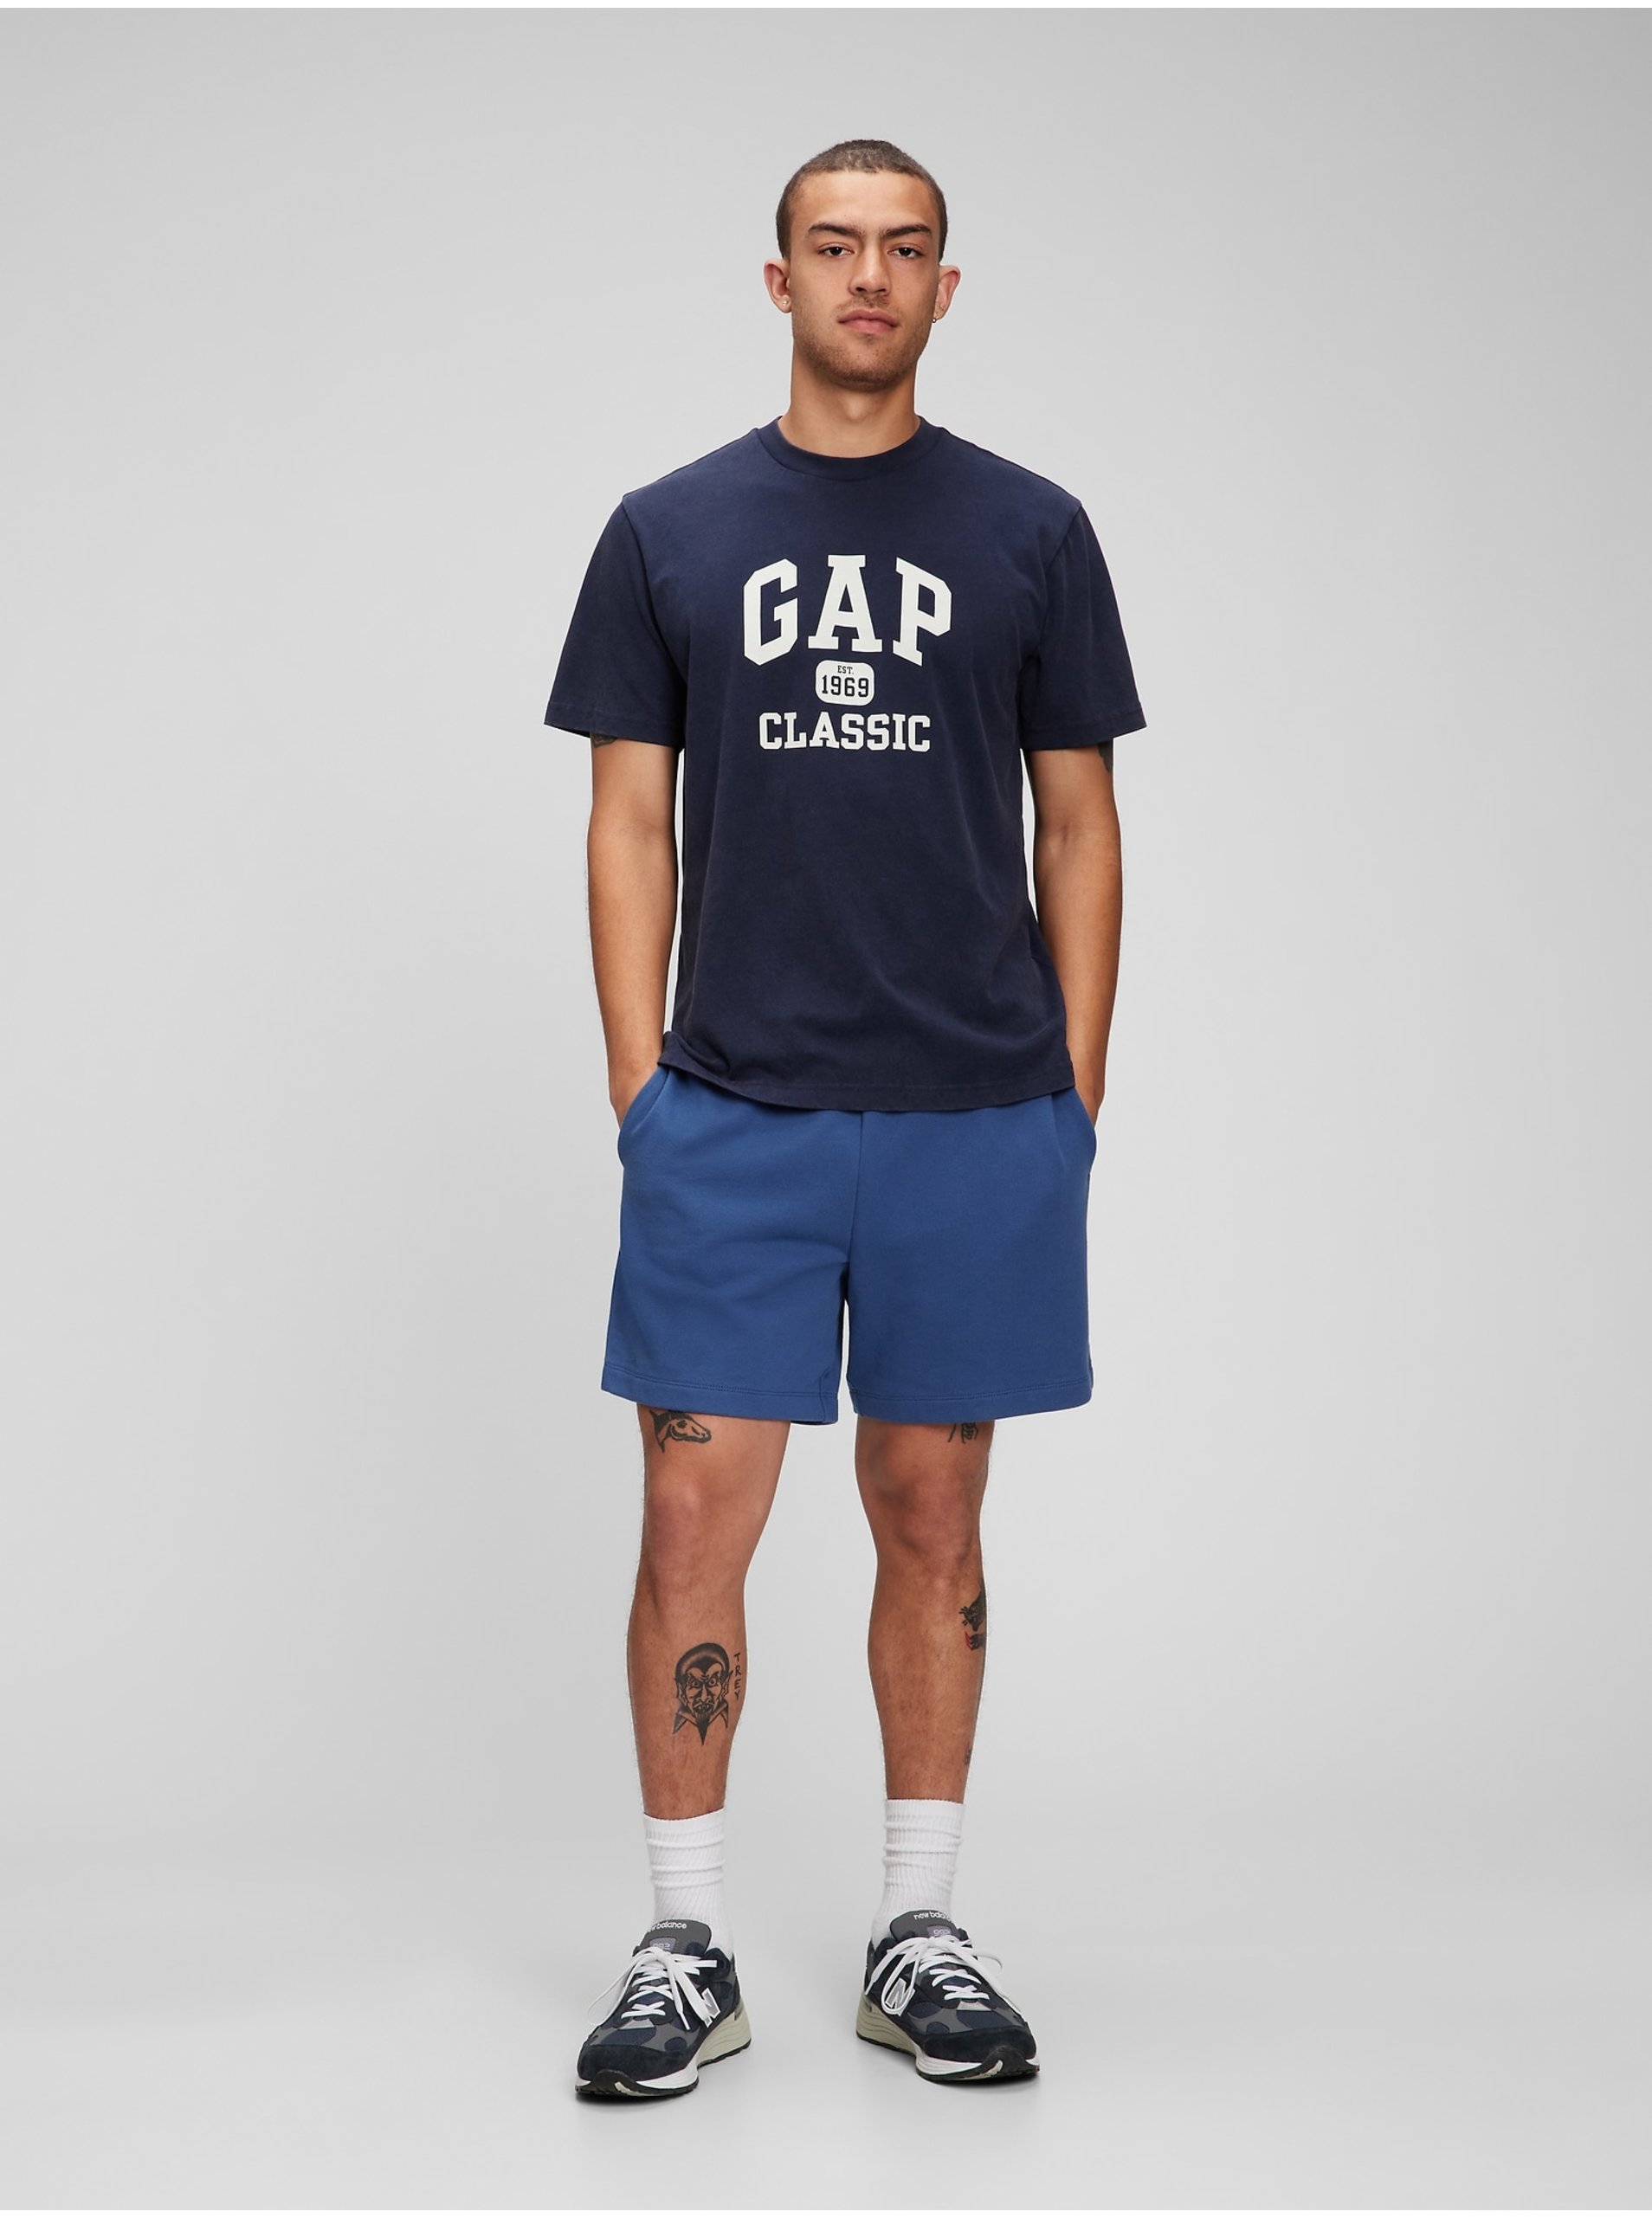 Levně Tmavě modré pánské tričko logo GAP 1969 Classic organic